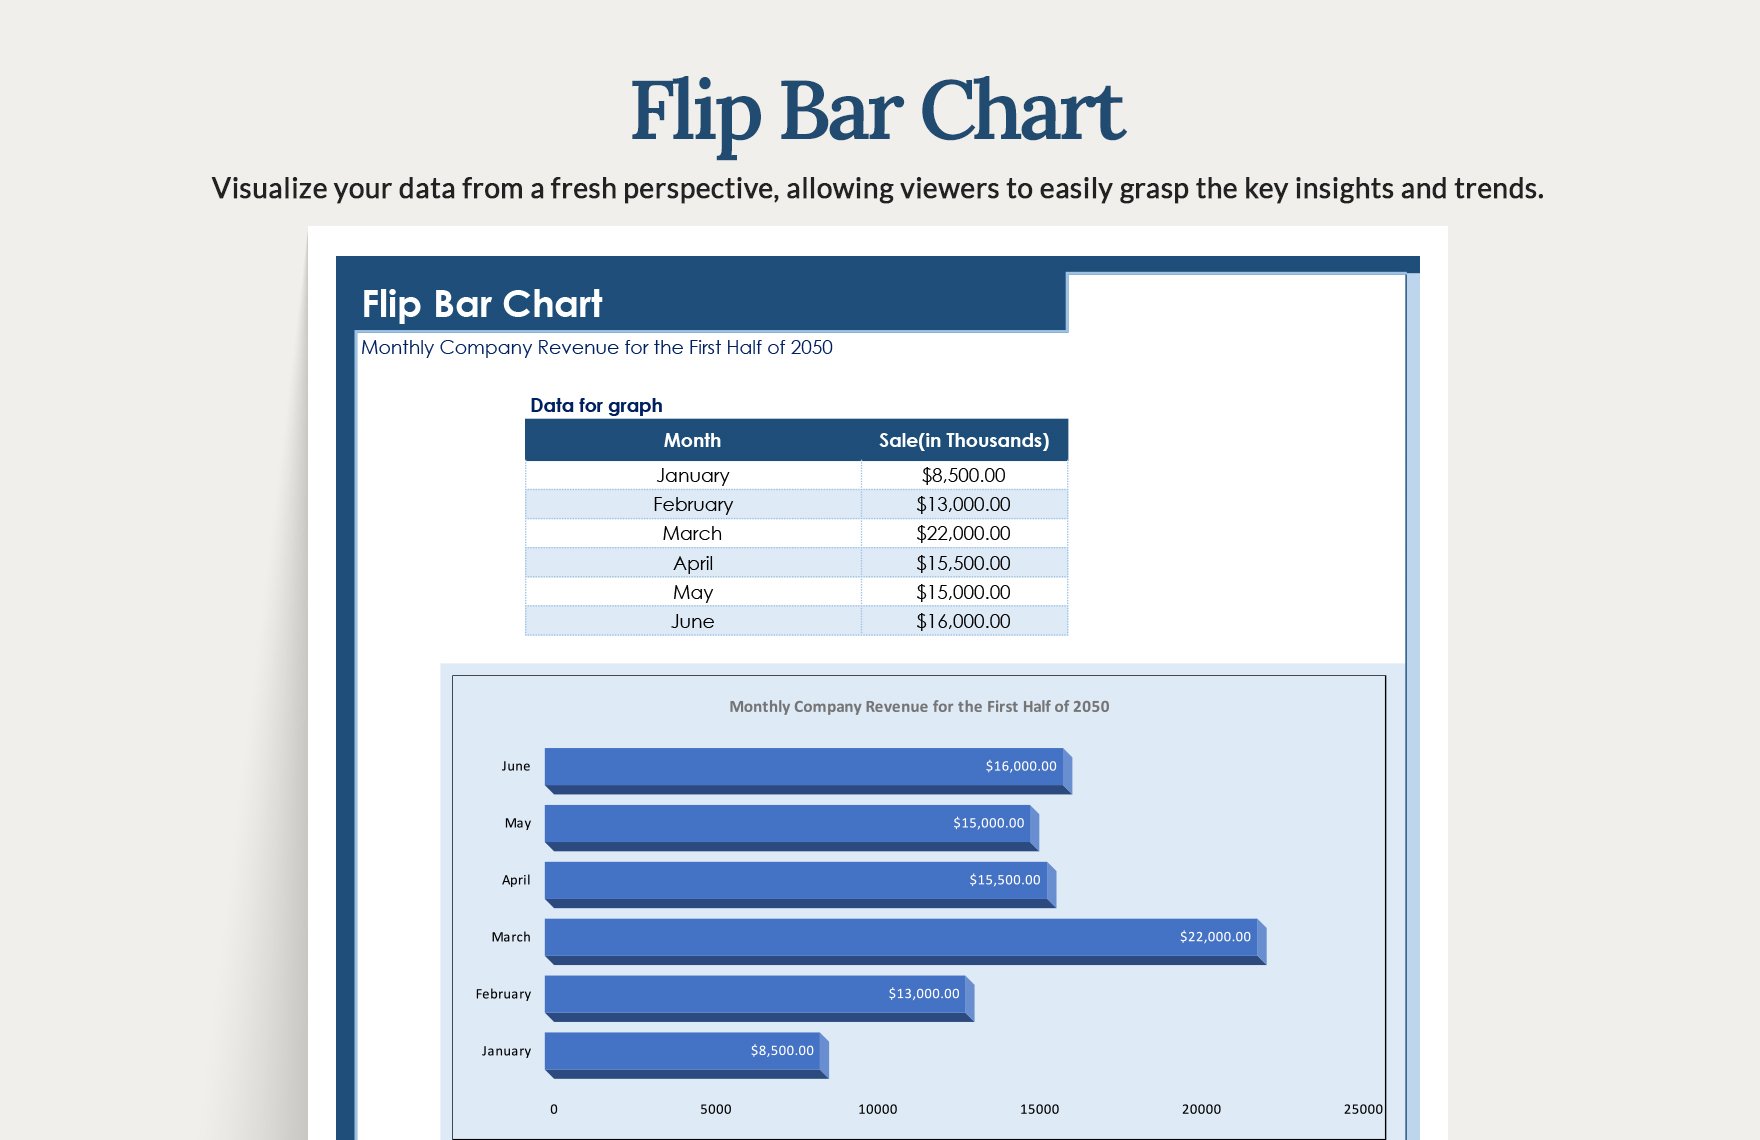 Flip Bar Chart